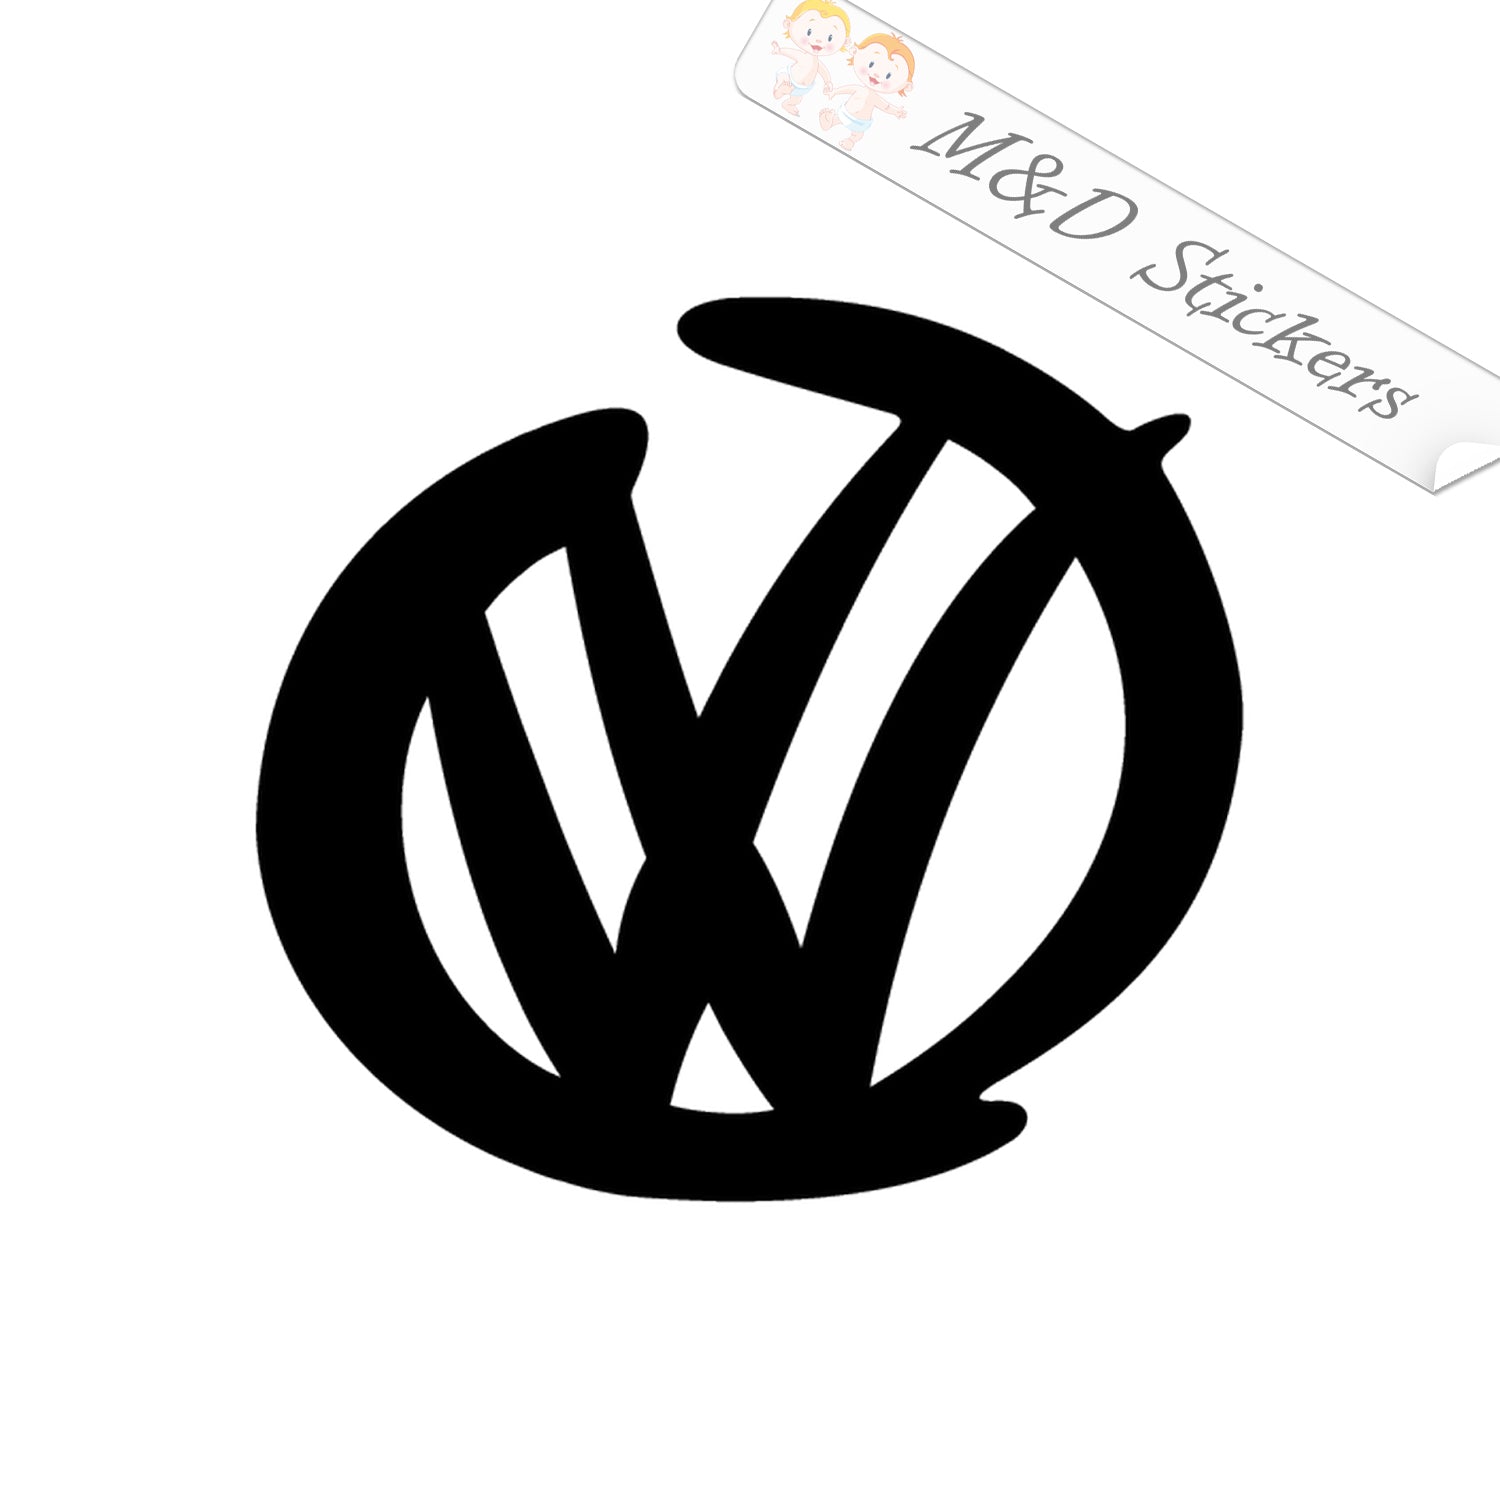 volkswagen car logo